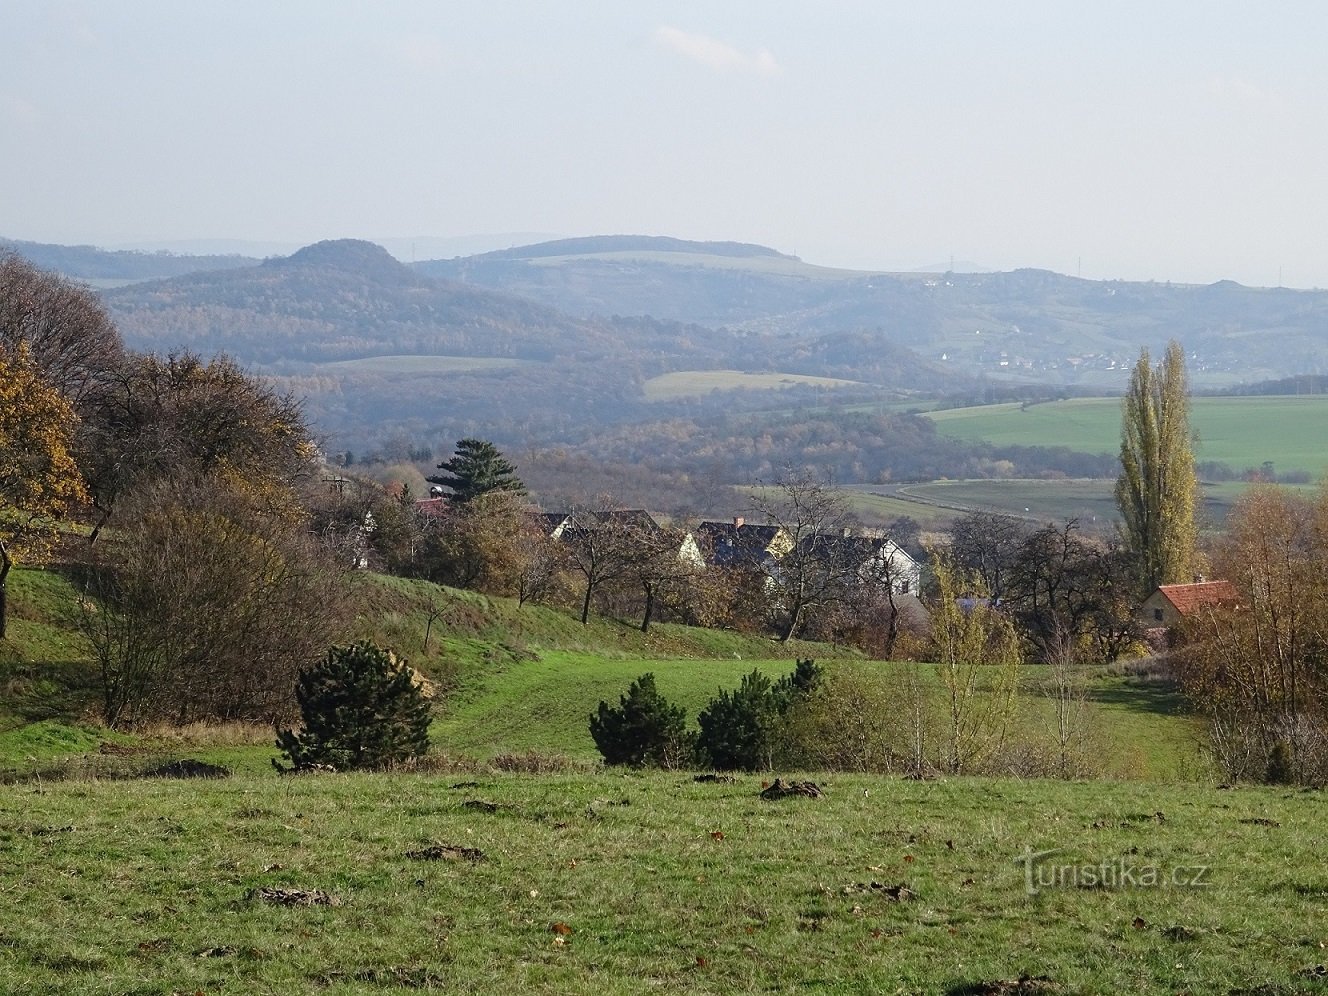 Hrušovka und im Hintergrund die Hügel des Labské údolí.